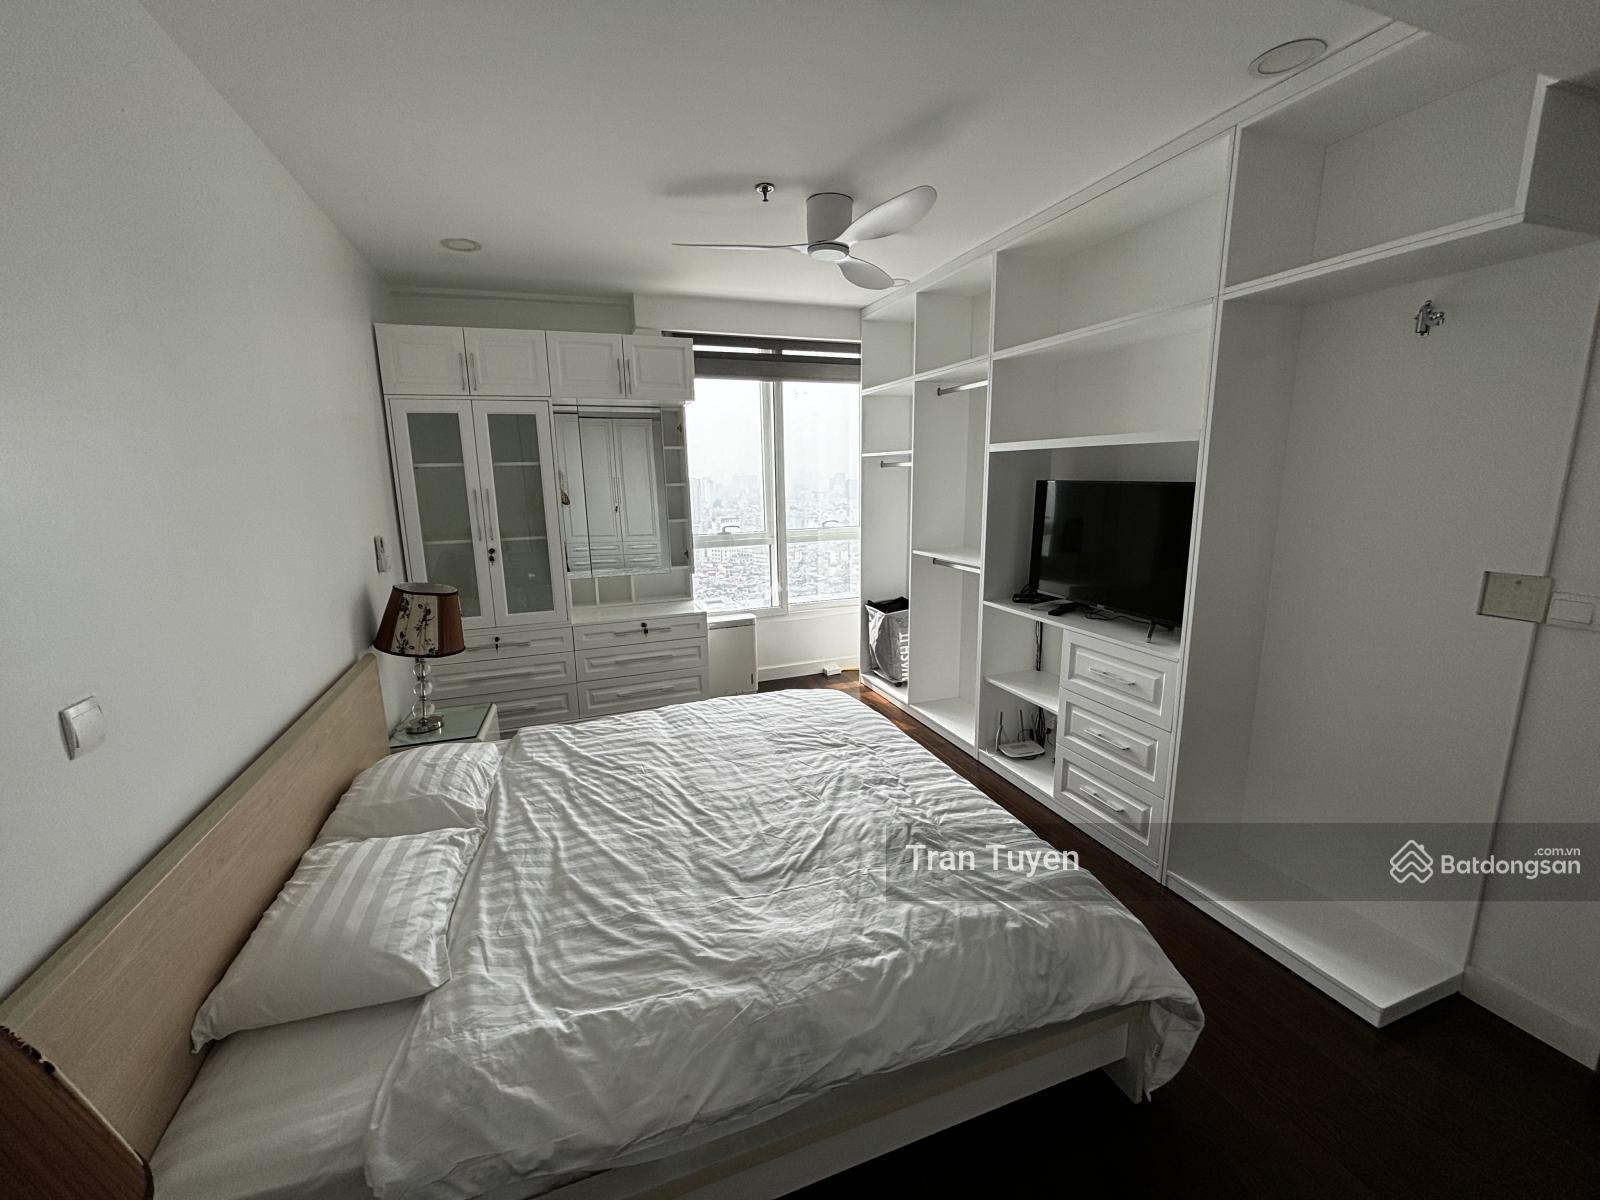 Cho thuê chung cư ngôi nhà có nội thất đặc sắc Đầy đủ vị trí thuận lợi nằm tại Bắc Từ Liêm, Hà Nội thuê ngay với giá rẻ bất ngờ 12 triệu/tháng